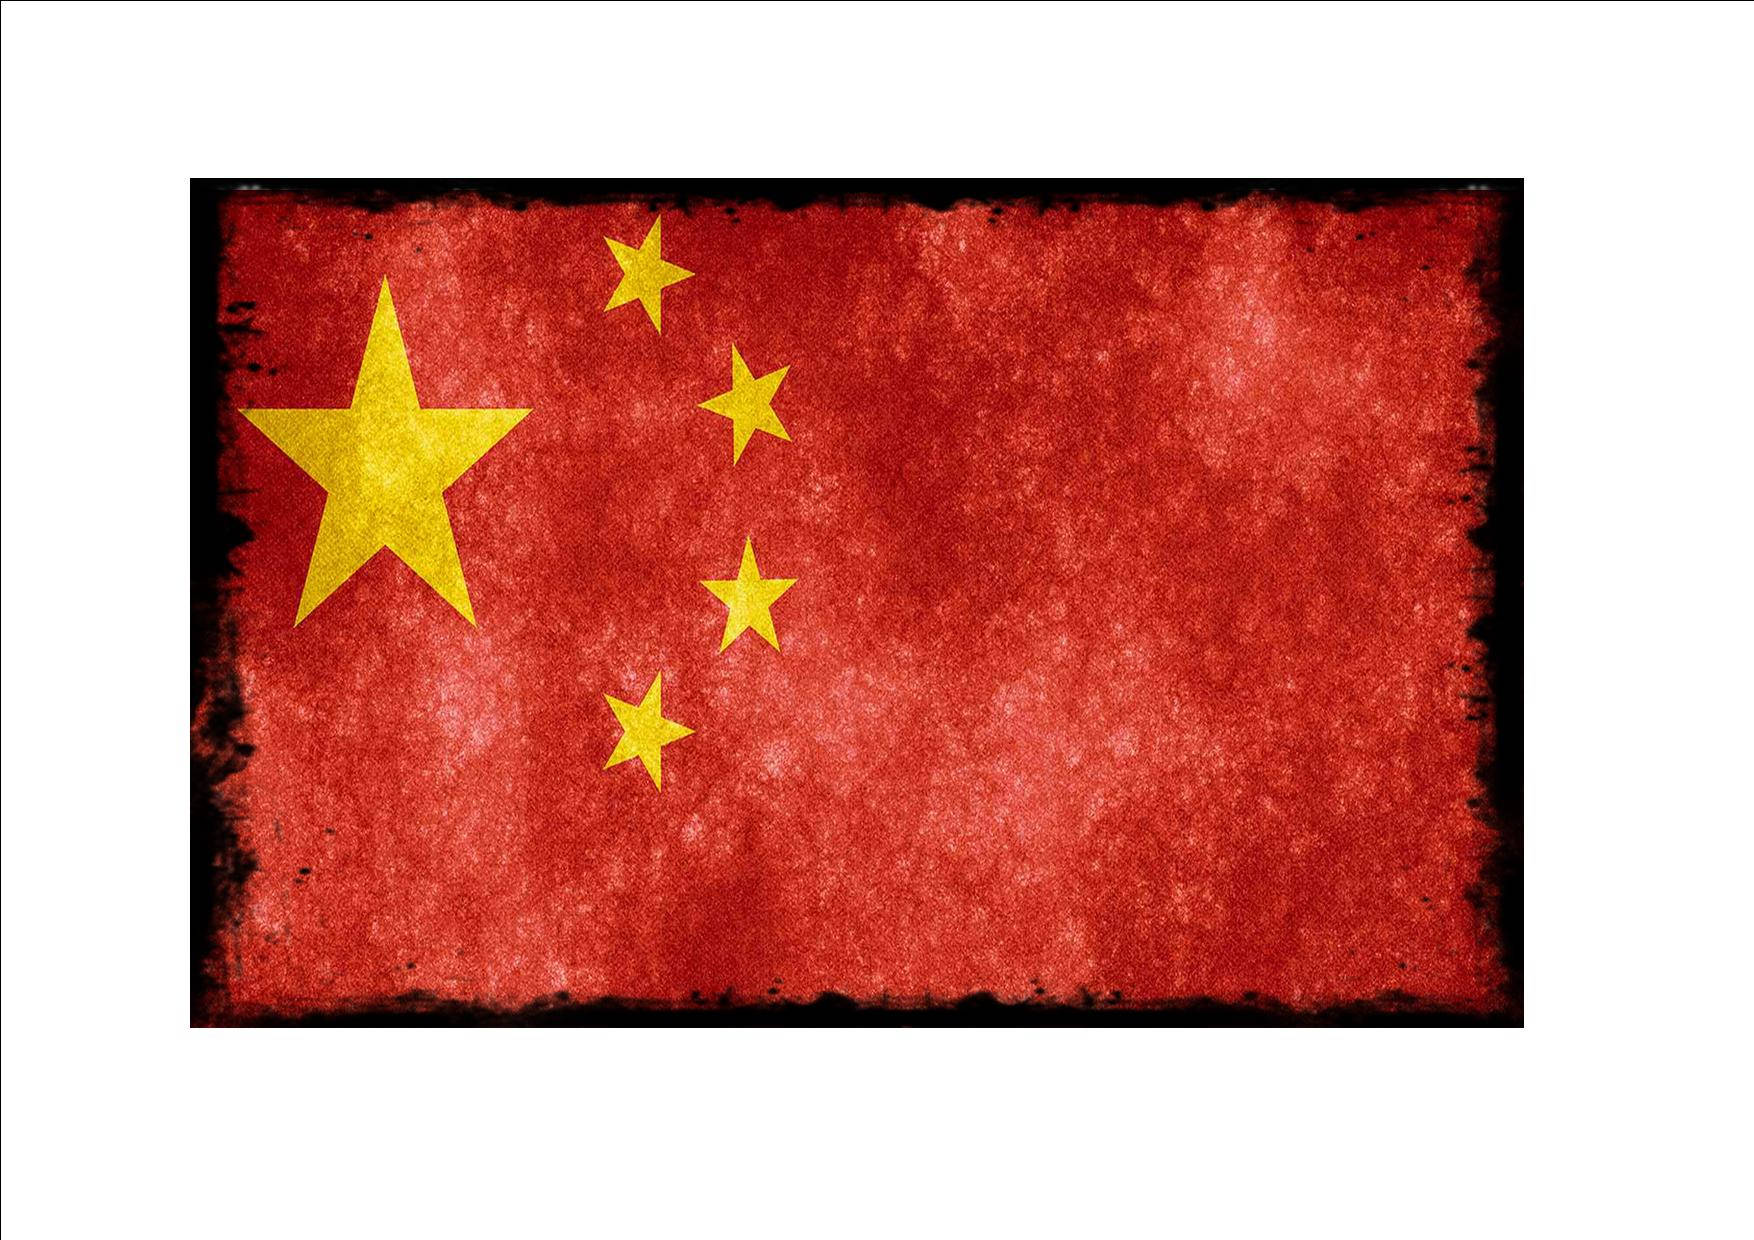 Striking Image Of China Flag With Black Border